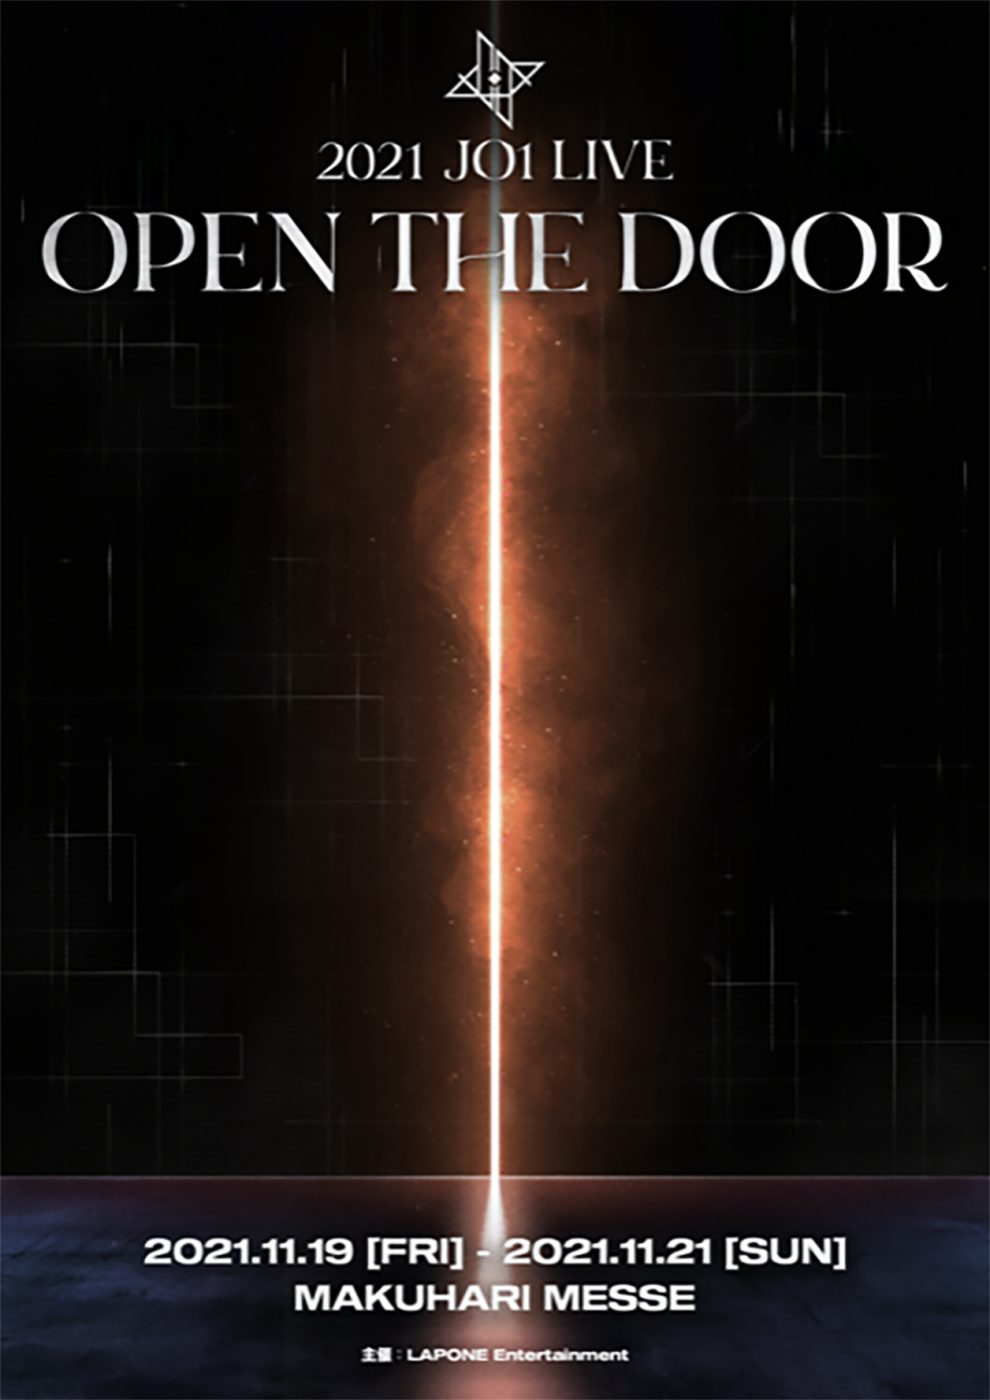 2021 JO1 LIVE “OPEN THE DOOR”